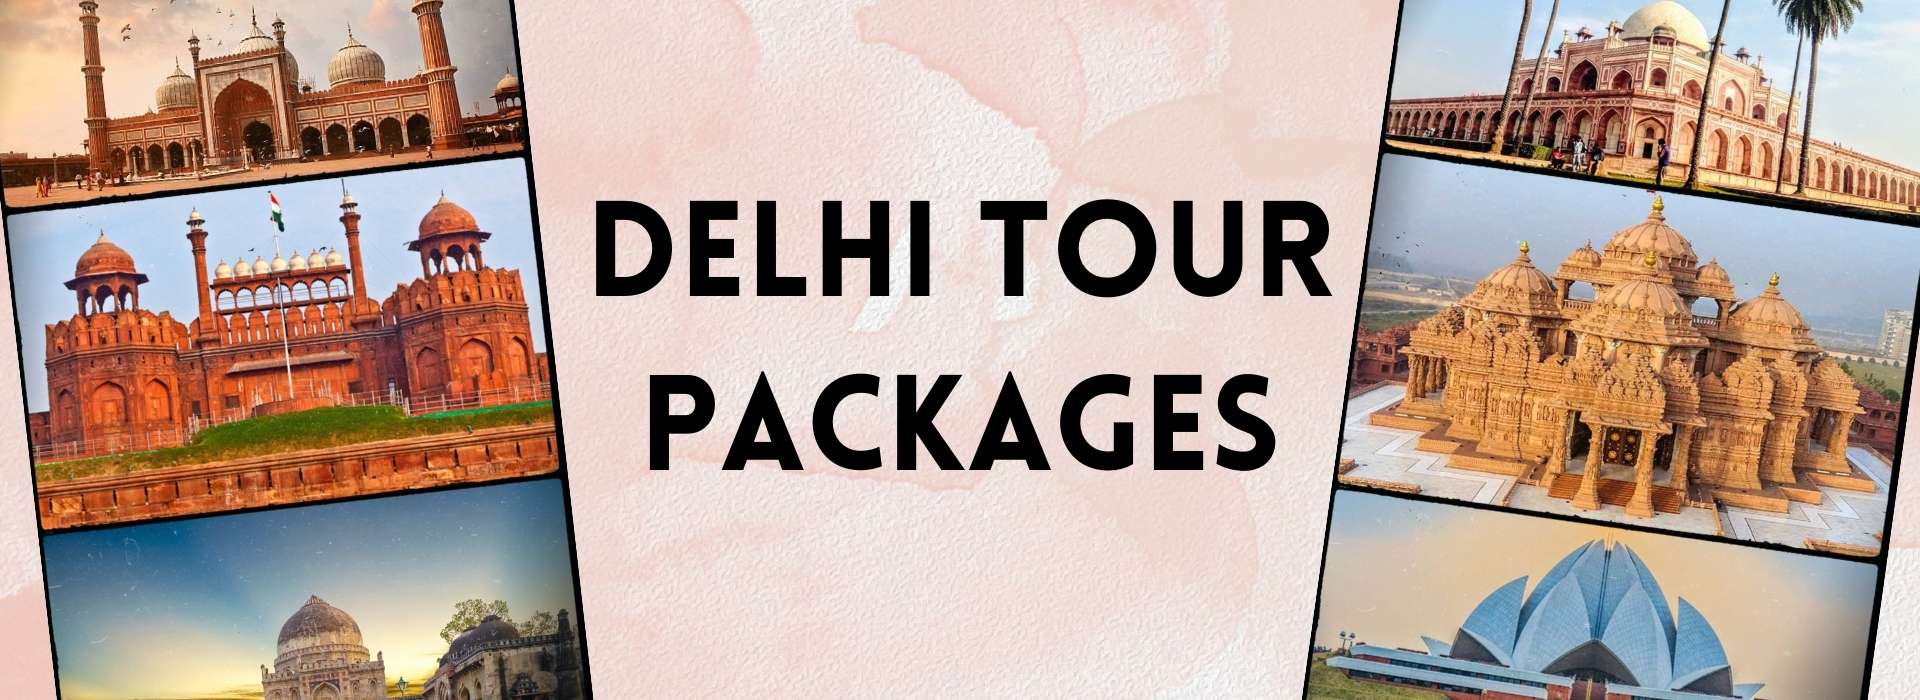 Delhi Tour Packages